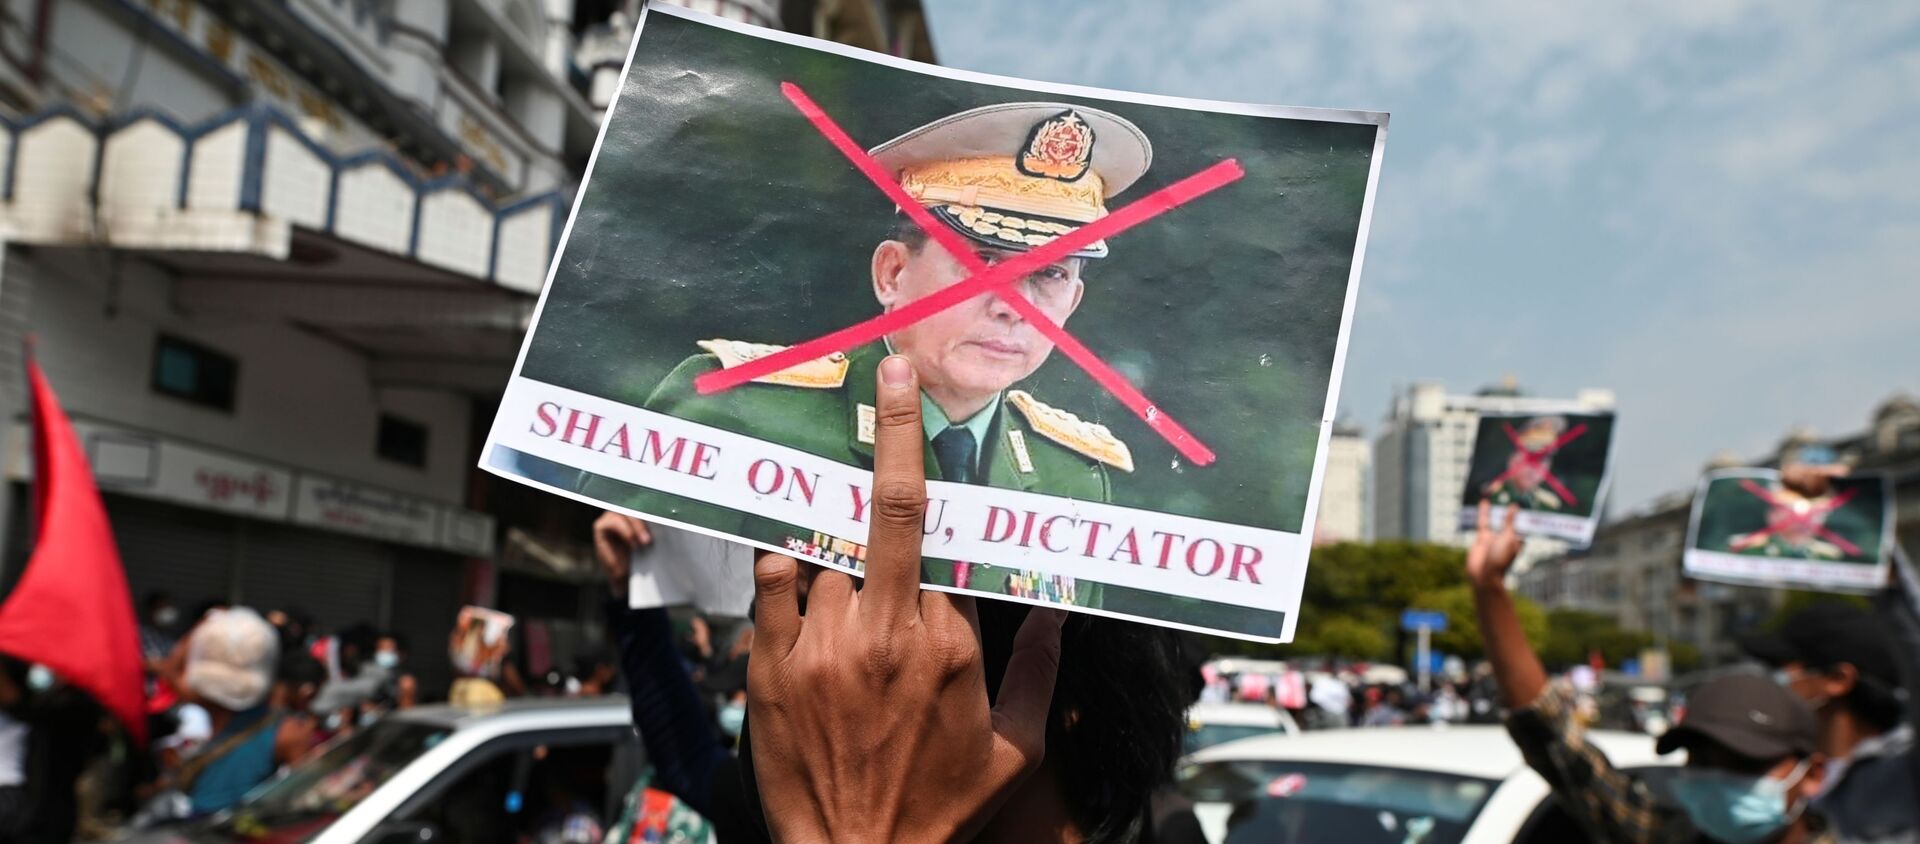 Askeri darbeye karşı düzenlenen protestolarda Genelkurmay Başkanı Min Aung Hlaing'in resmine çarpı atılıp 'Utan diktatör' yazıldı. (Yangon, Myanmar) - Sputnik Türkiye, 1920, 08.02.2021